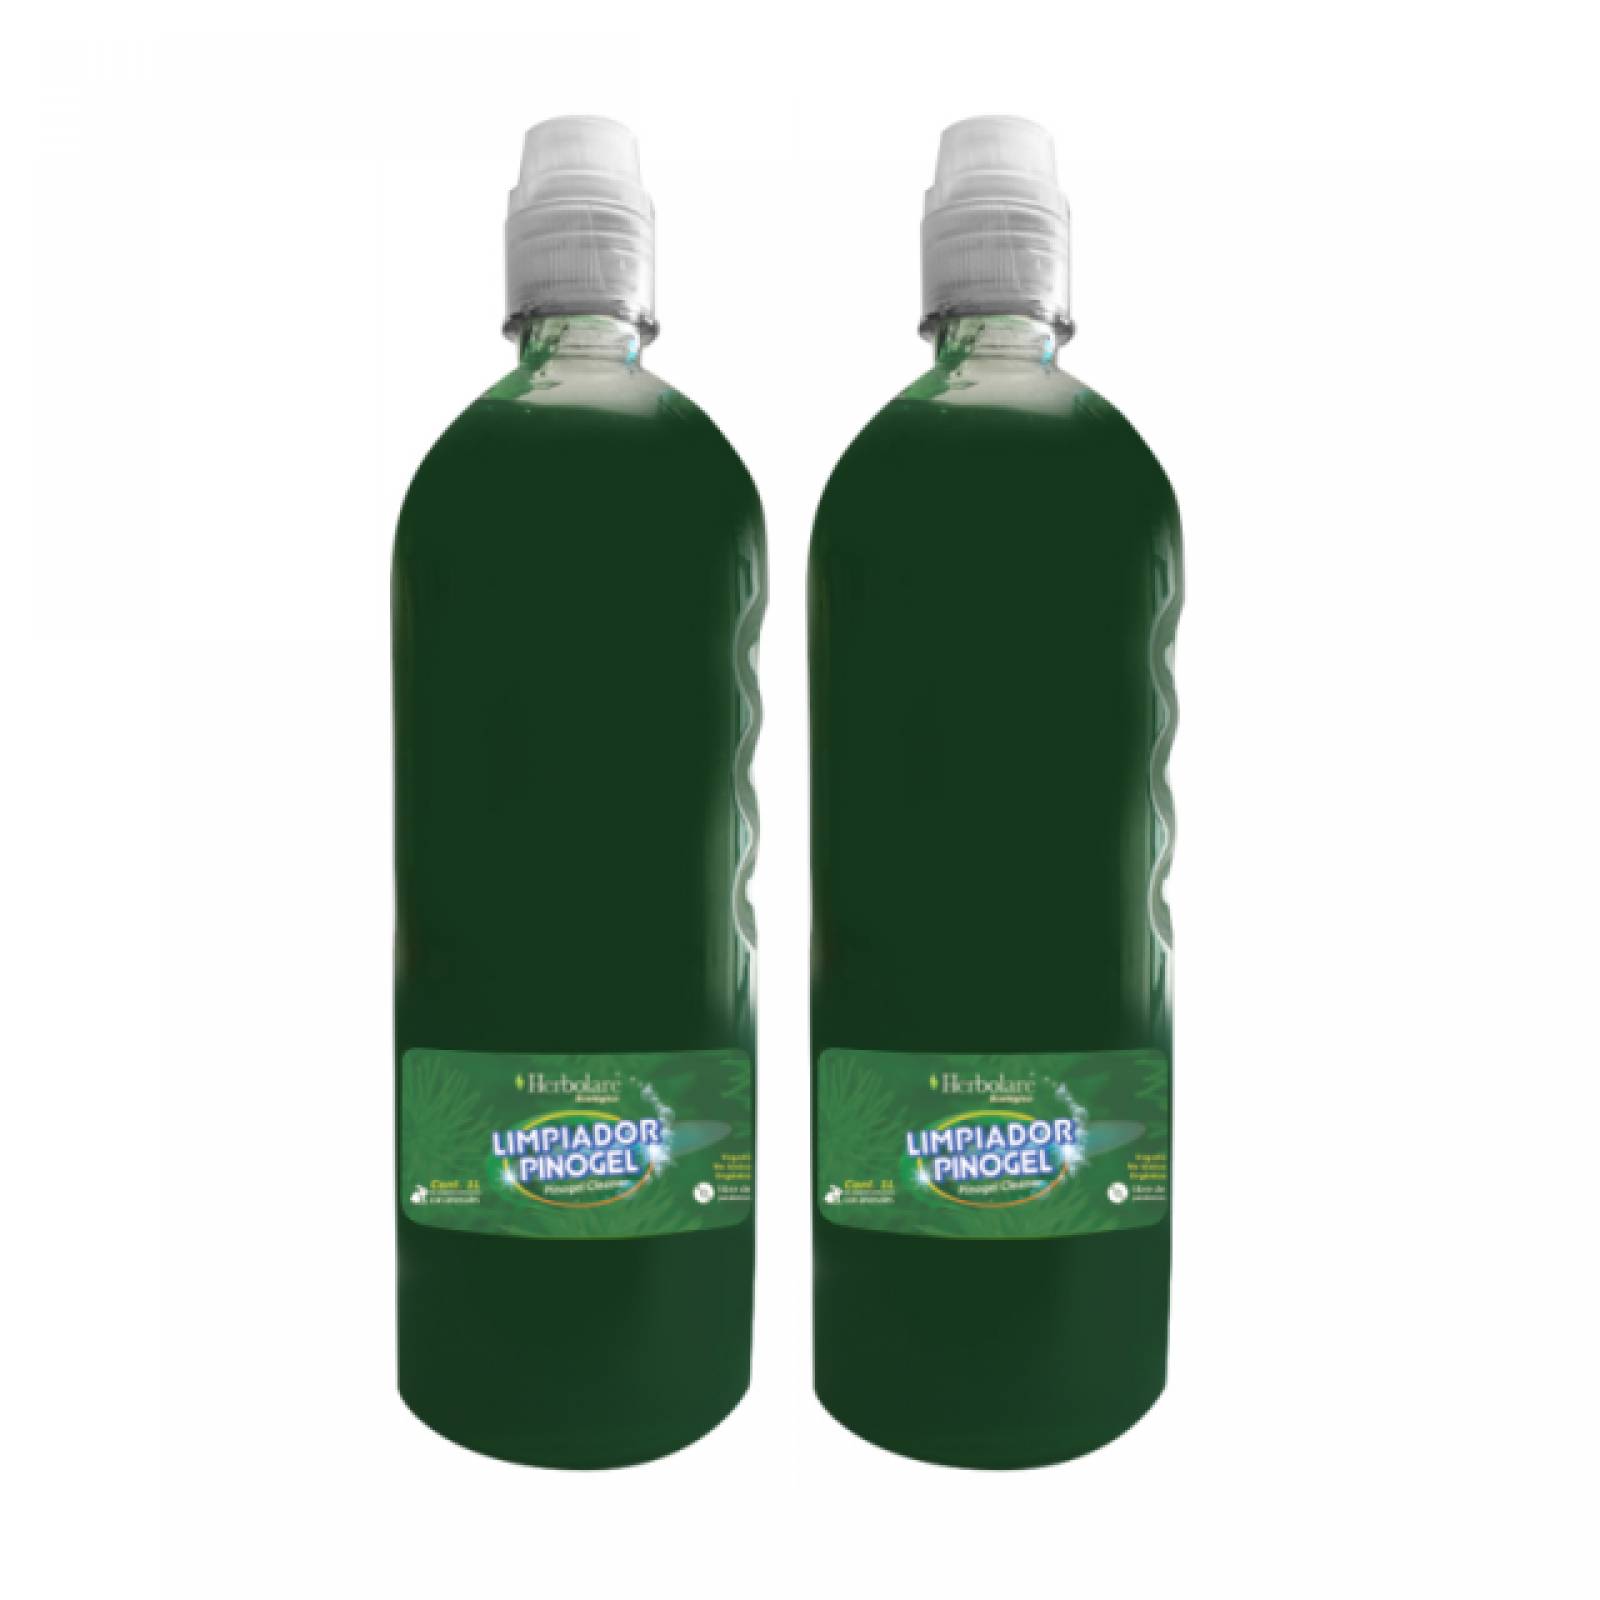 2 Multilimpiador Pinogel Biodegradable Herbolare Ecológico